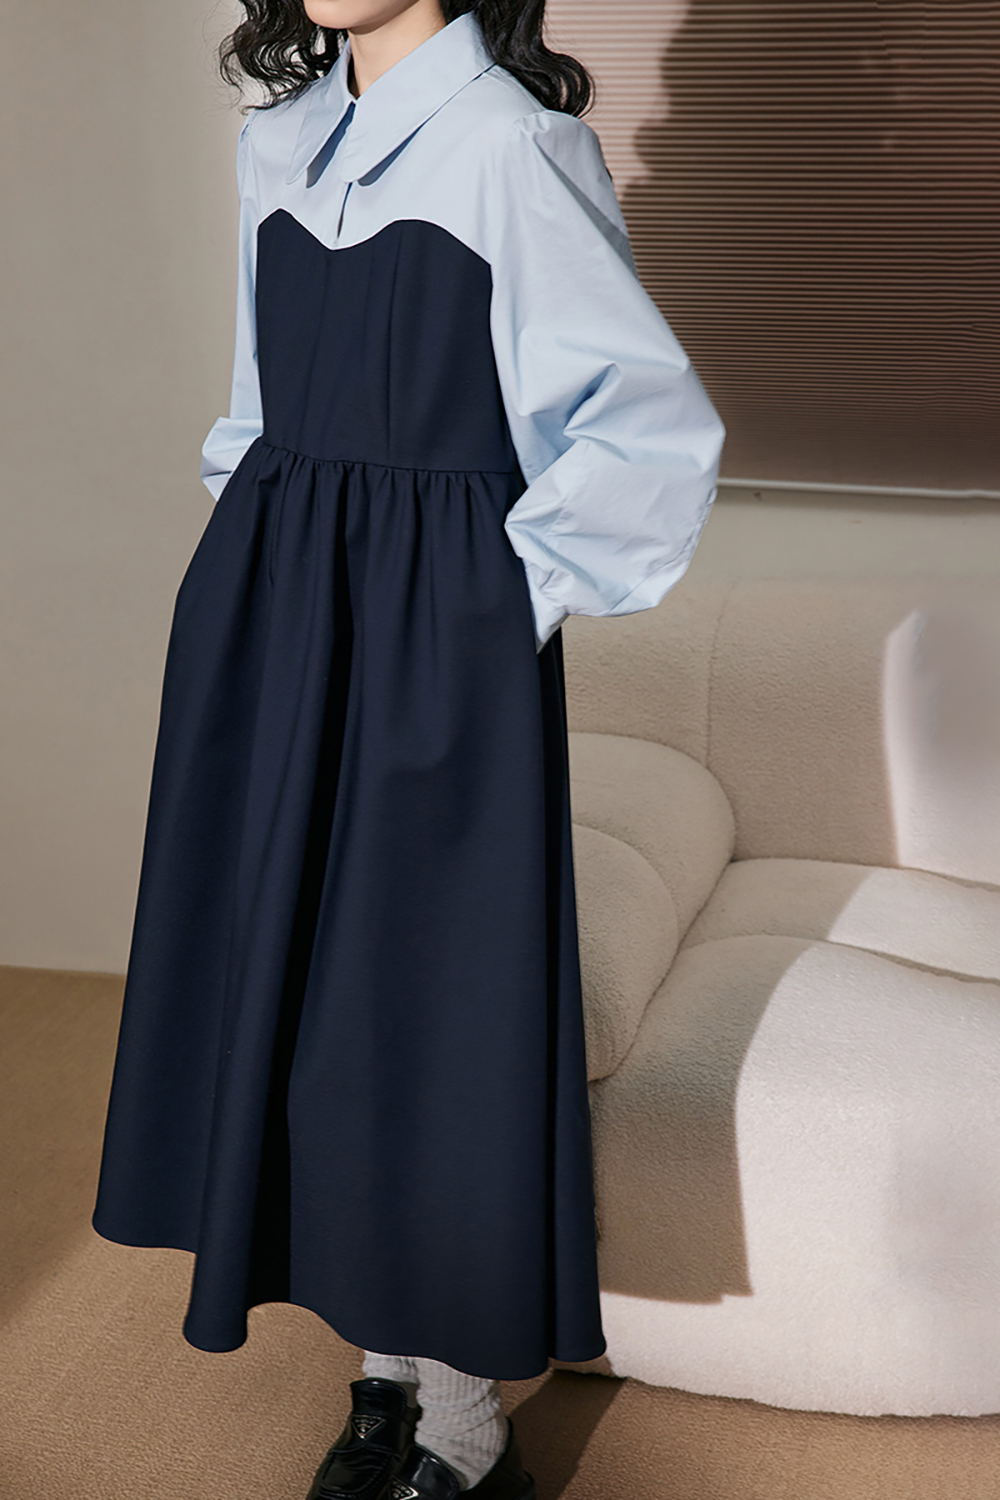 Simple shirtwaist dress